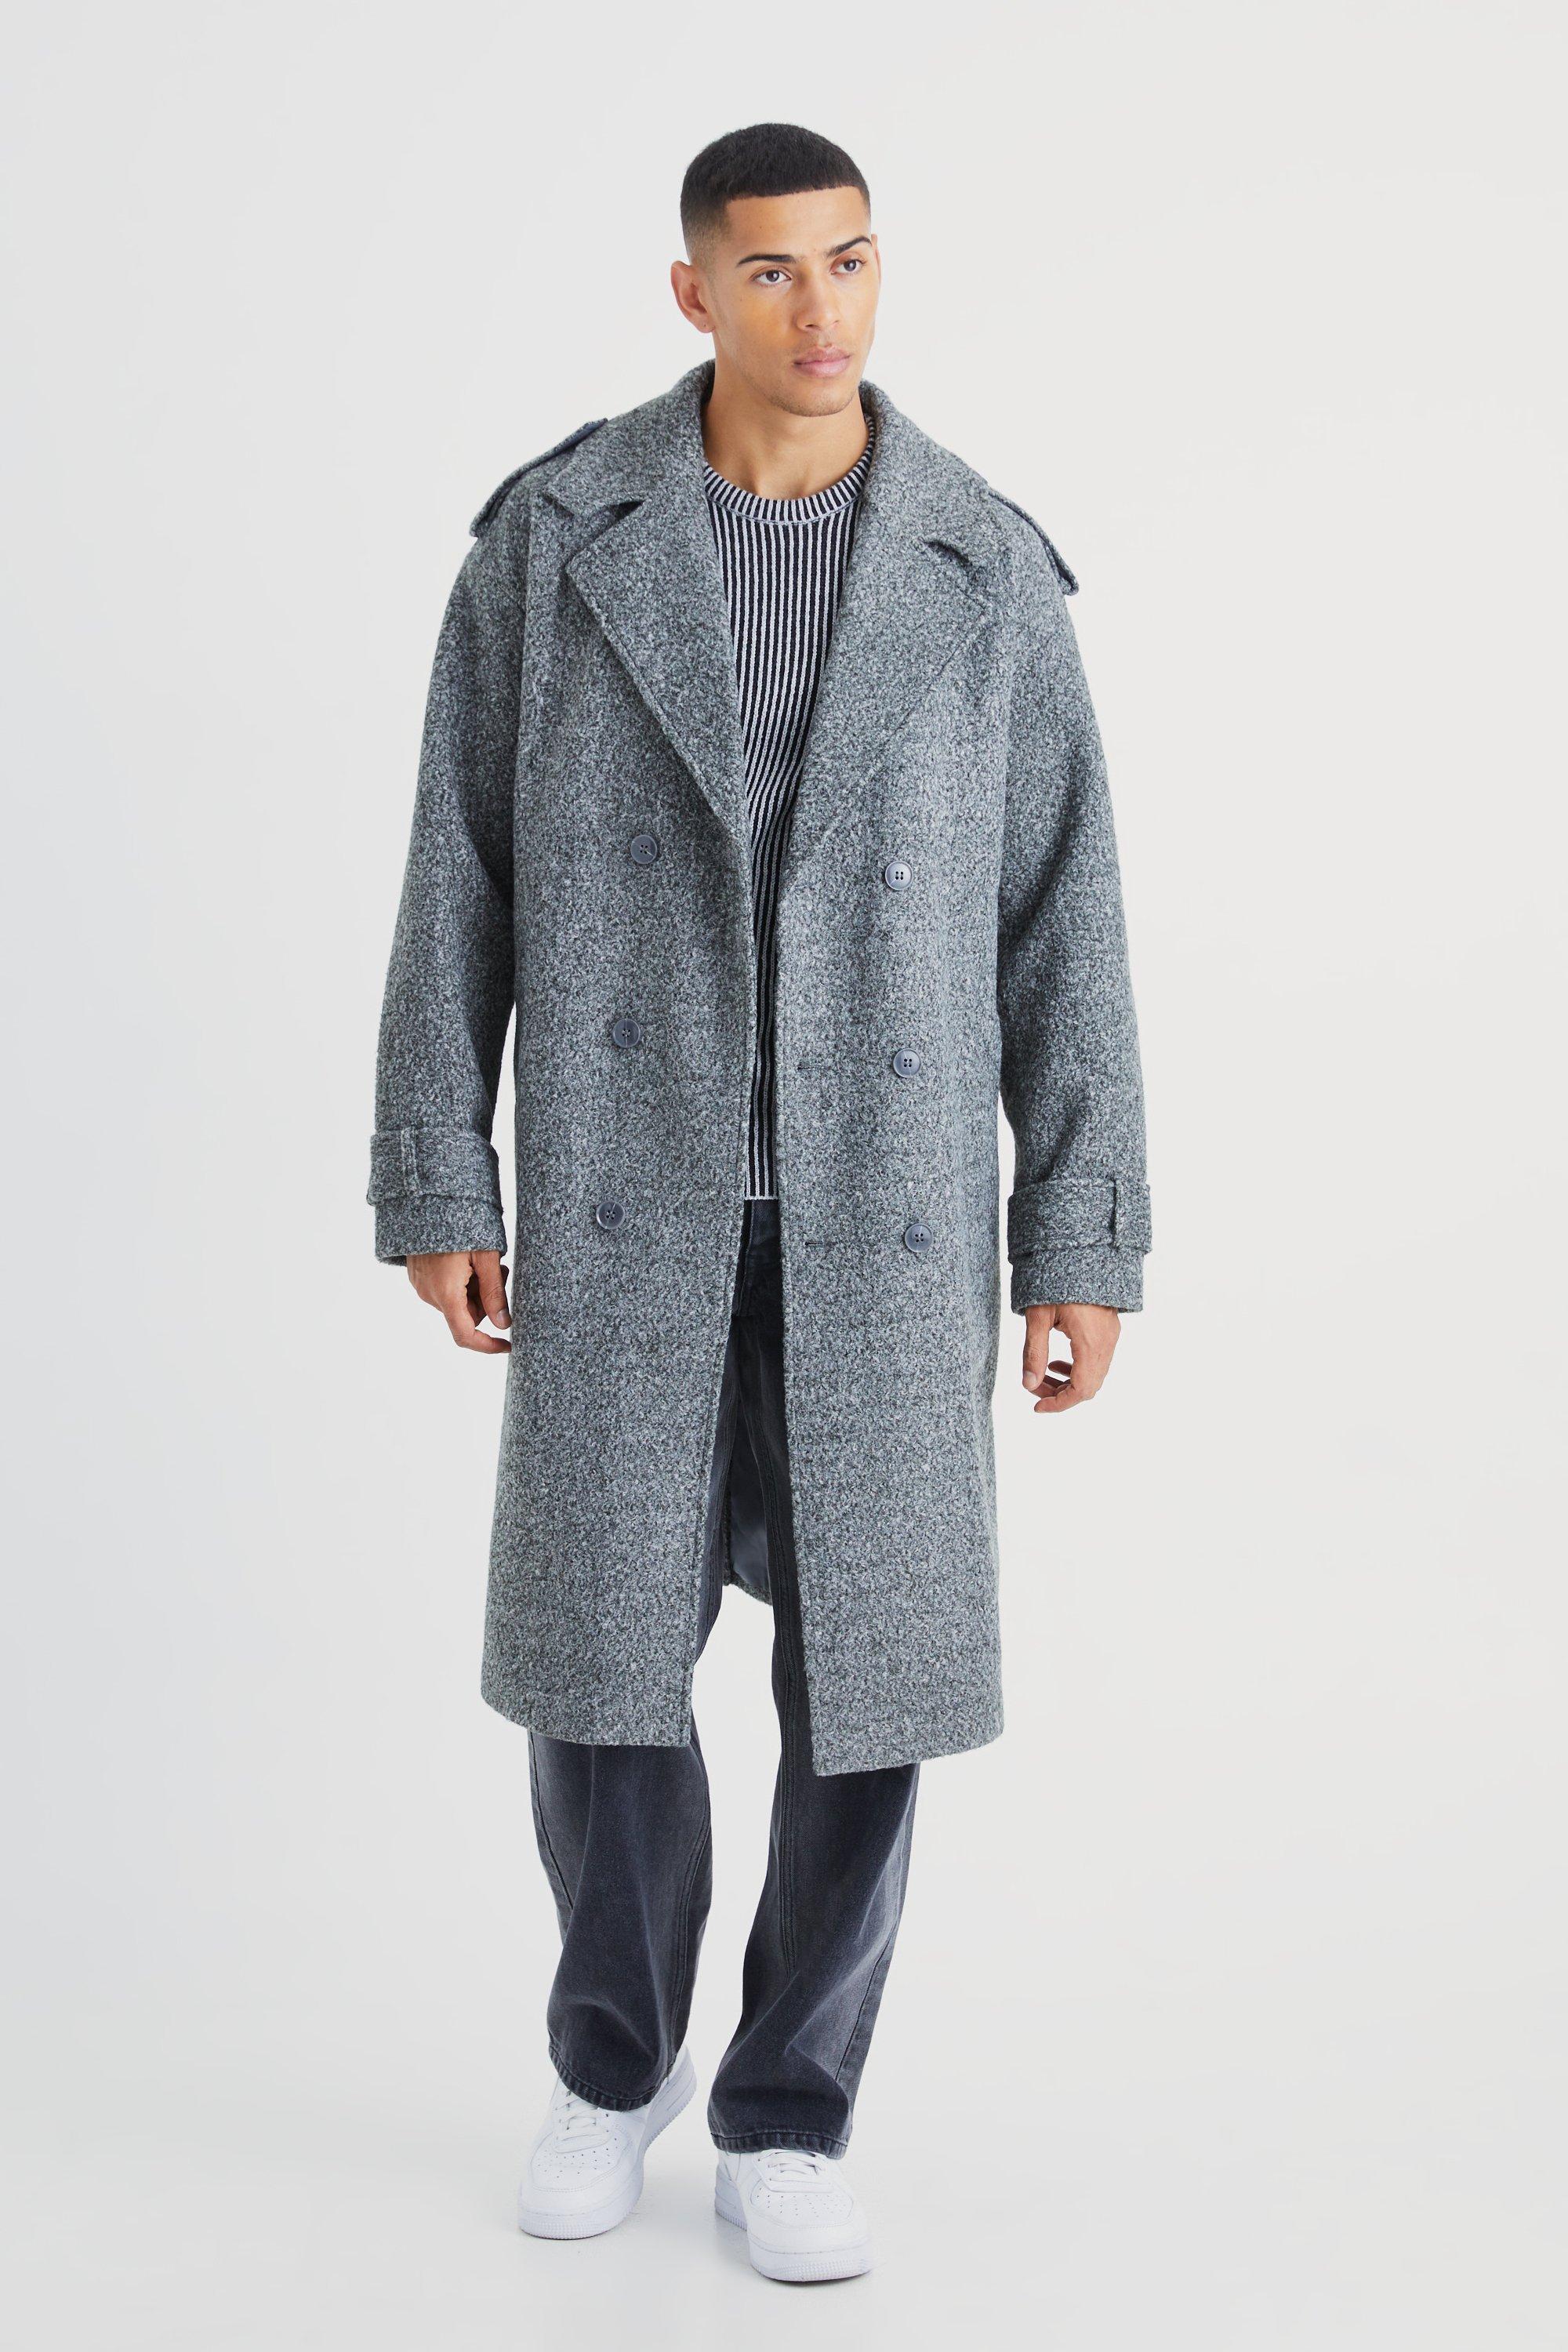 manteau long croisé moucheté homme - gris - s, gris